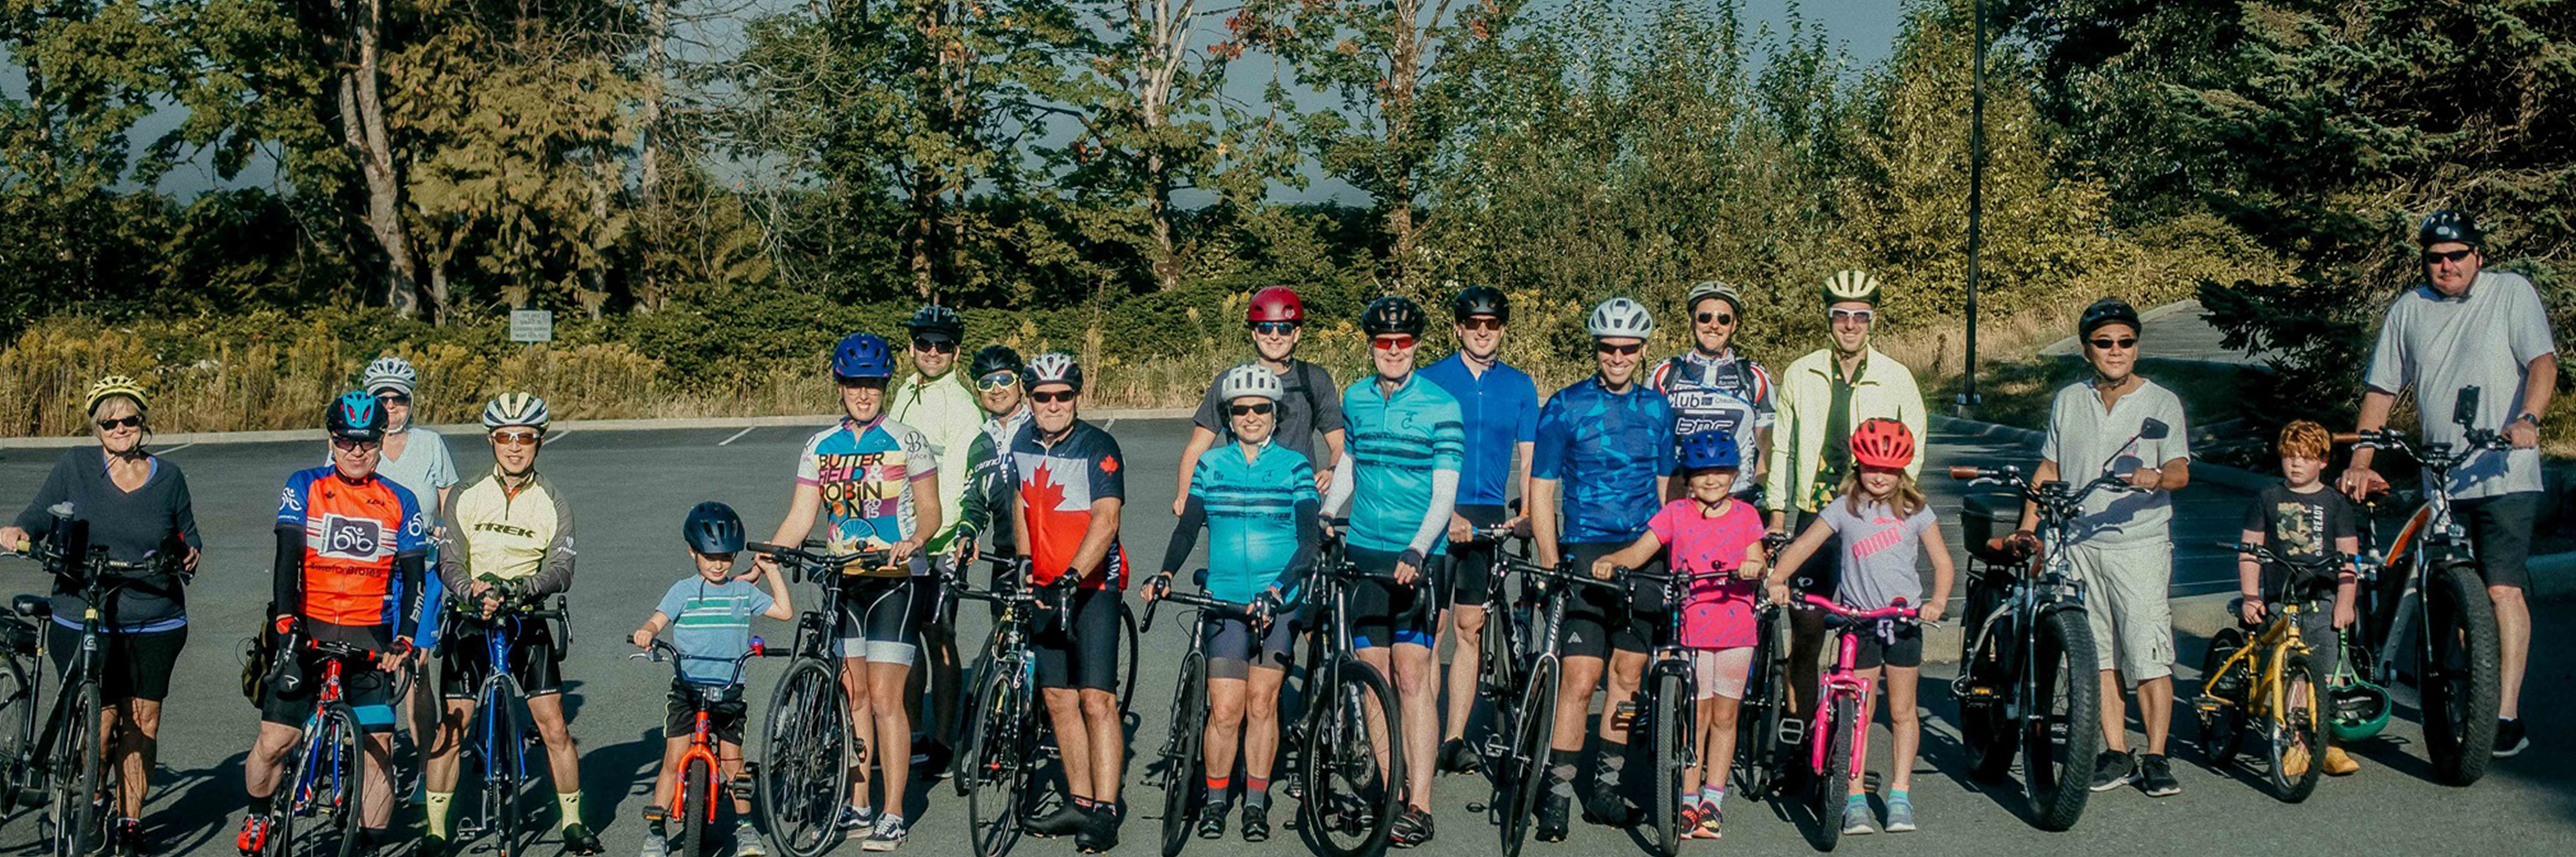 Bannière photo pour le Ride to Thrive 2022 avec une photo d'un groupe de coureurs de l'événement 2021 à Abbotsford, BC